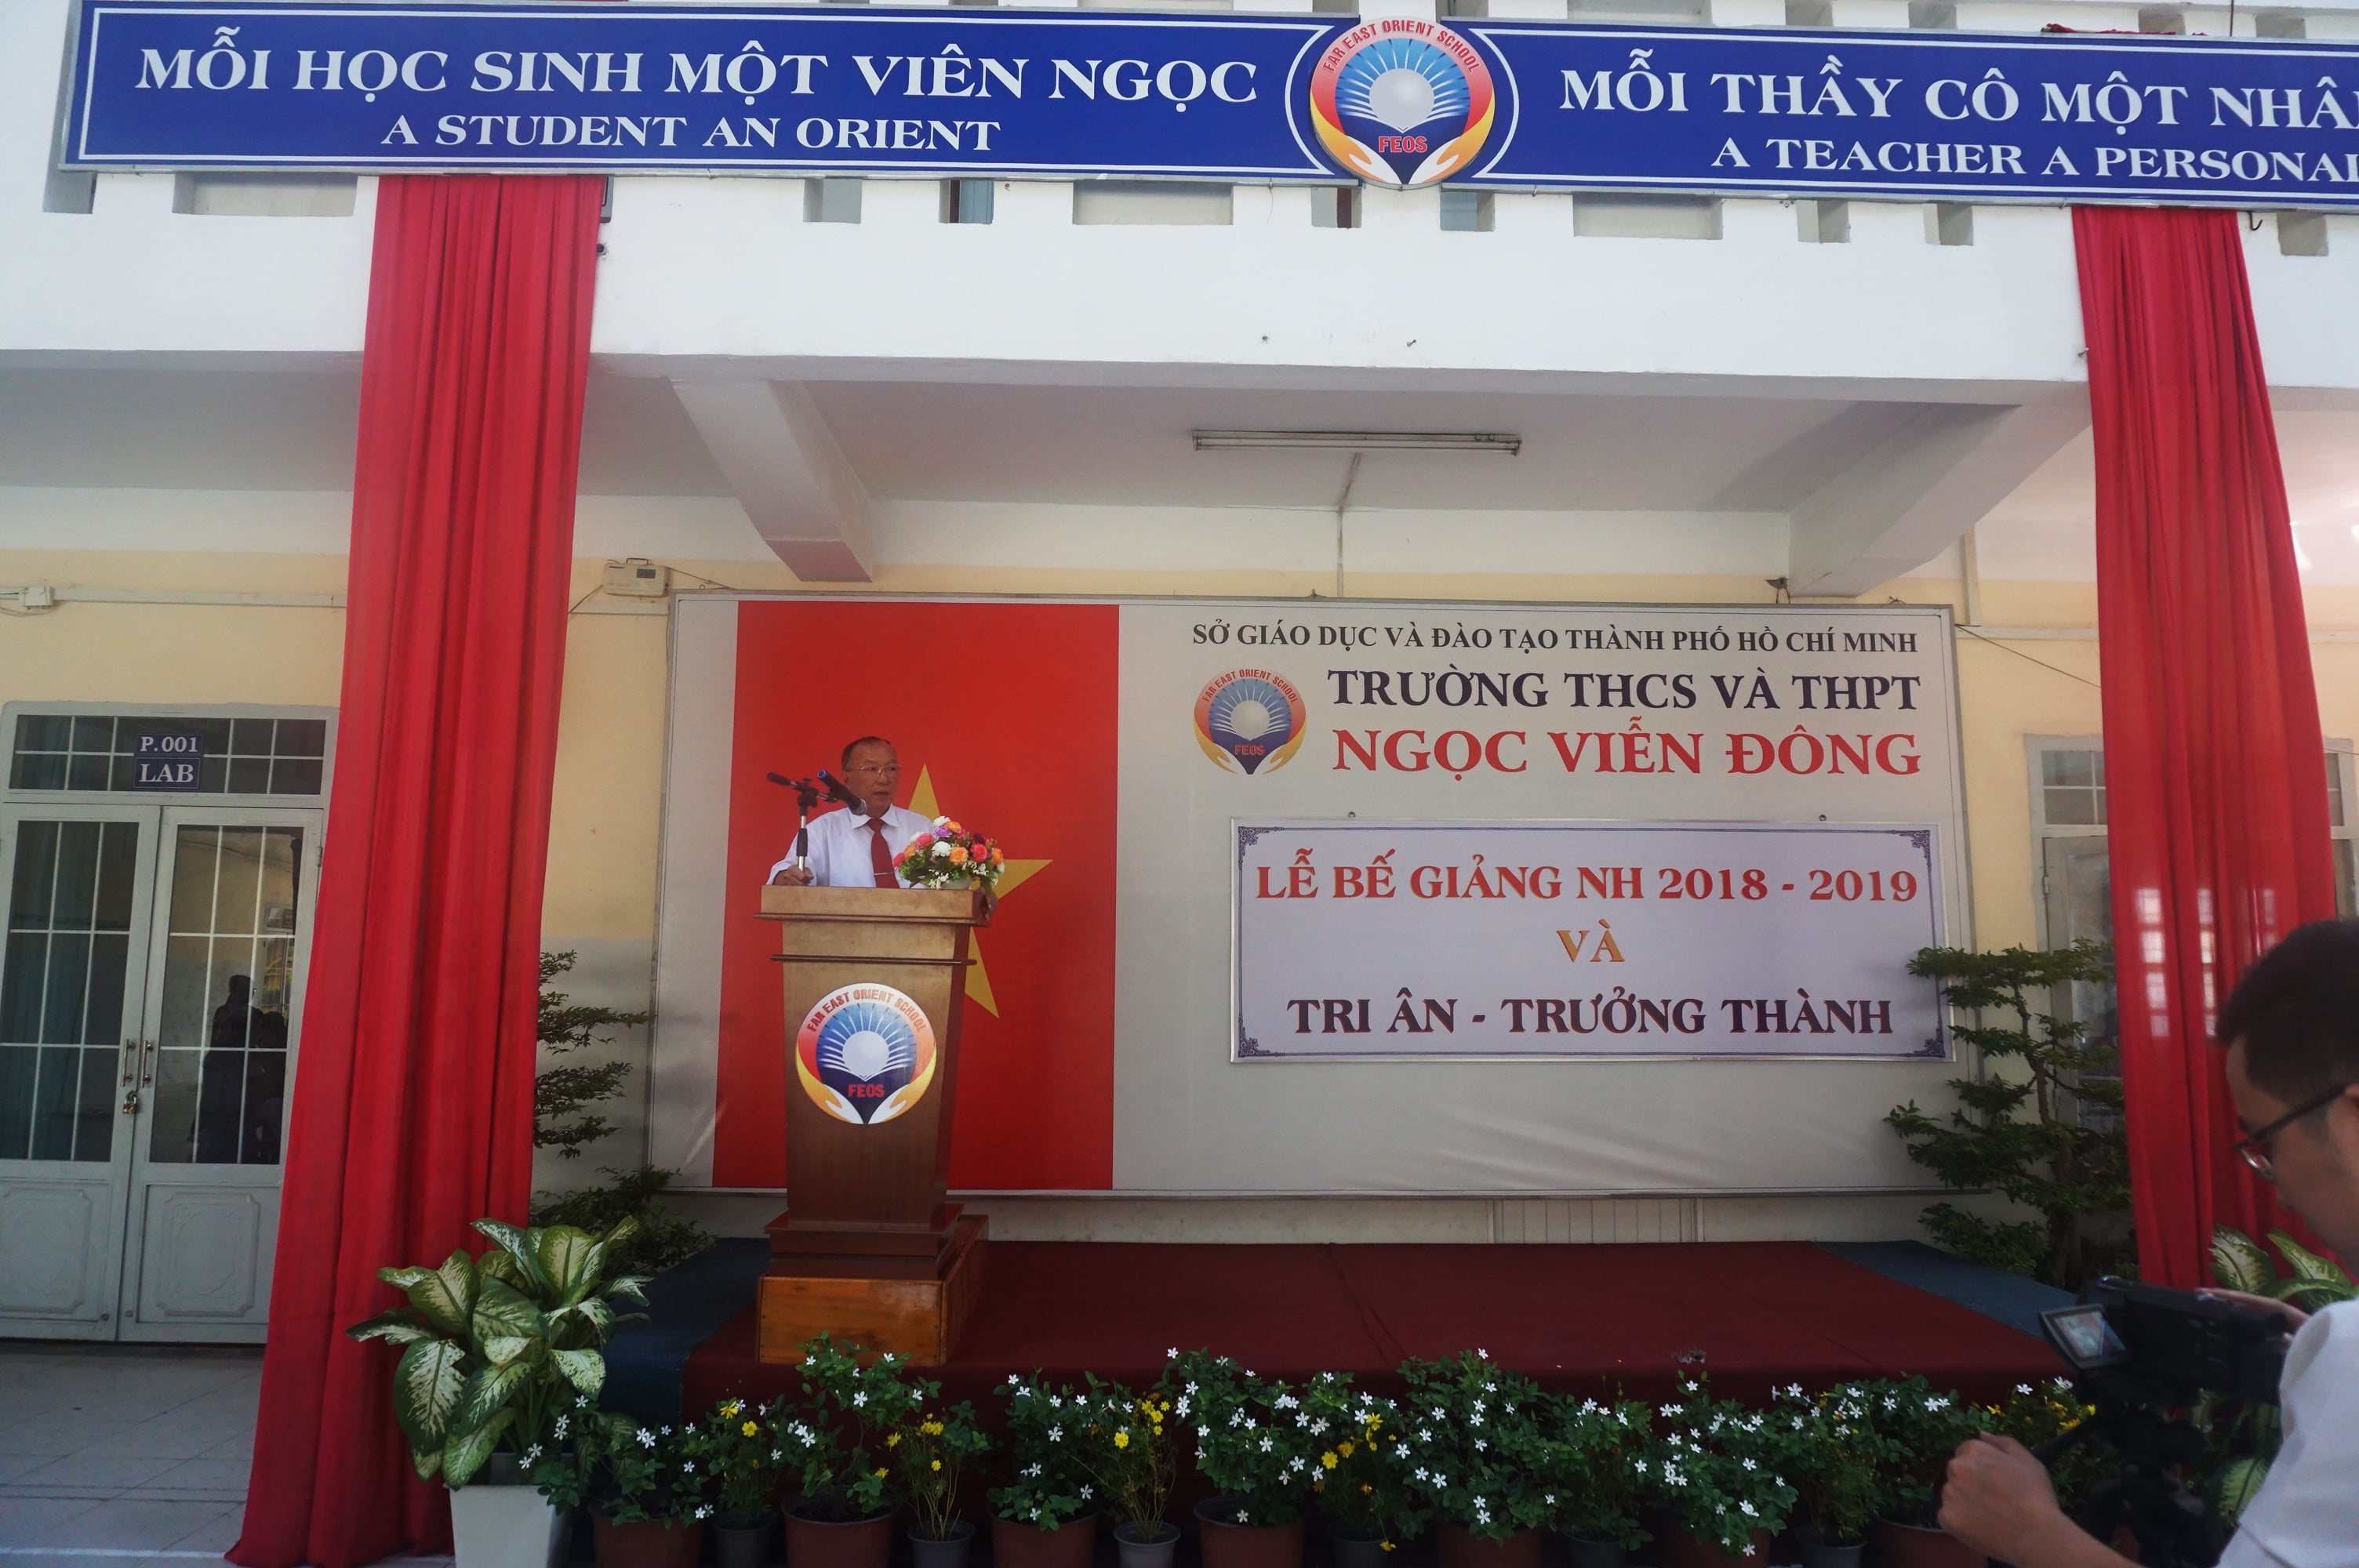 Thầy Hiệu trưởng Võ Thanh Vân phát biểu trong lễ bế giảng năm học 2018 - 2019 trường THCS và THPT Ngọc Viễn Đông